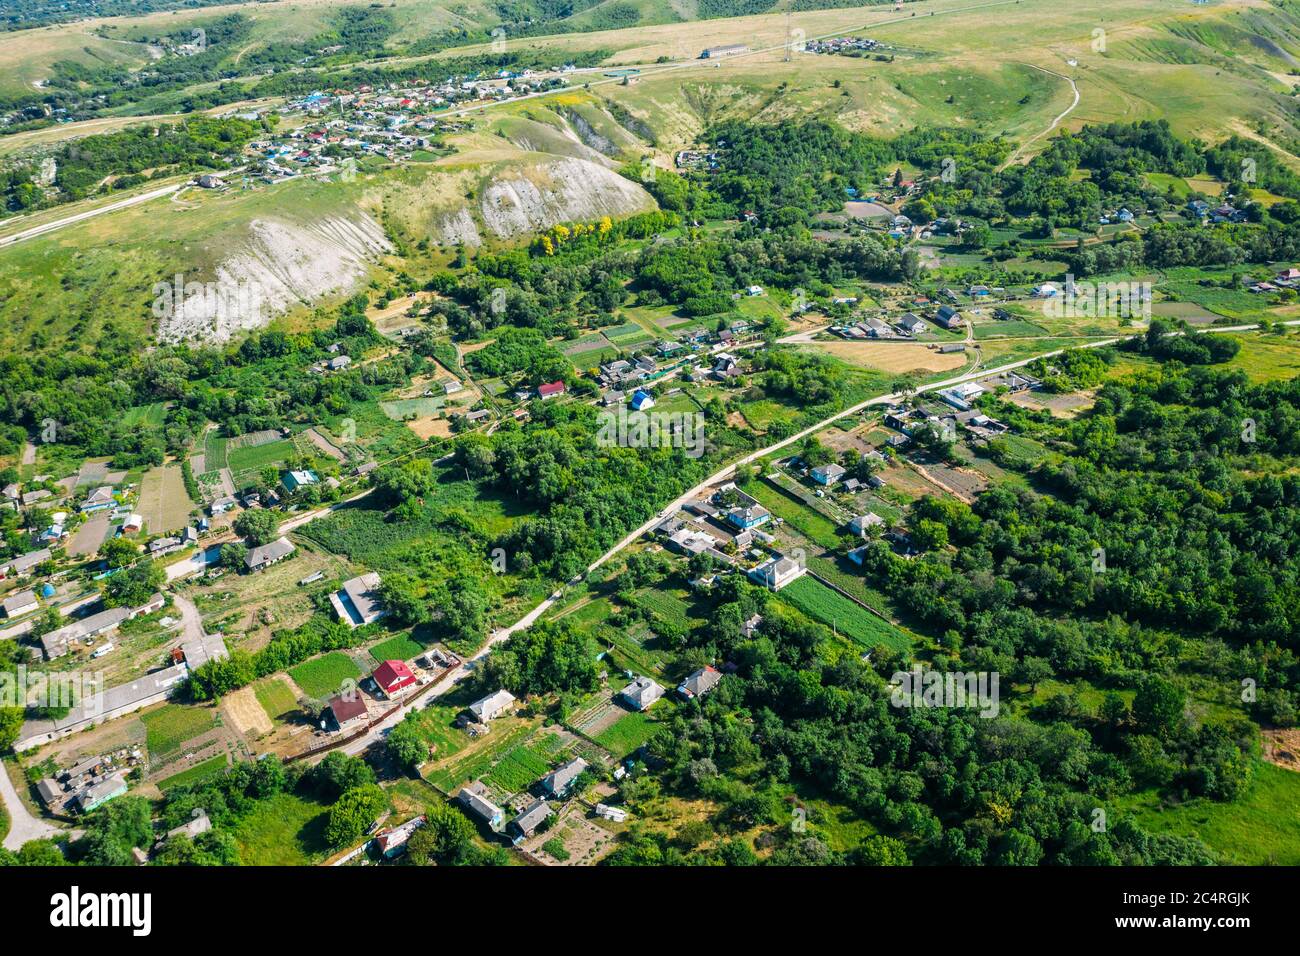 Village rural parmi les collines verdoyantes et les champs agricoles en campagne , vue aérienne de drone. Banque D'Images